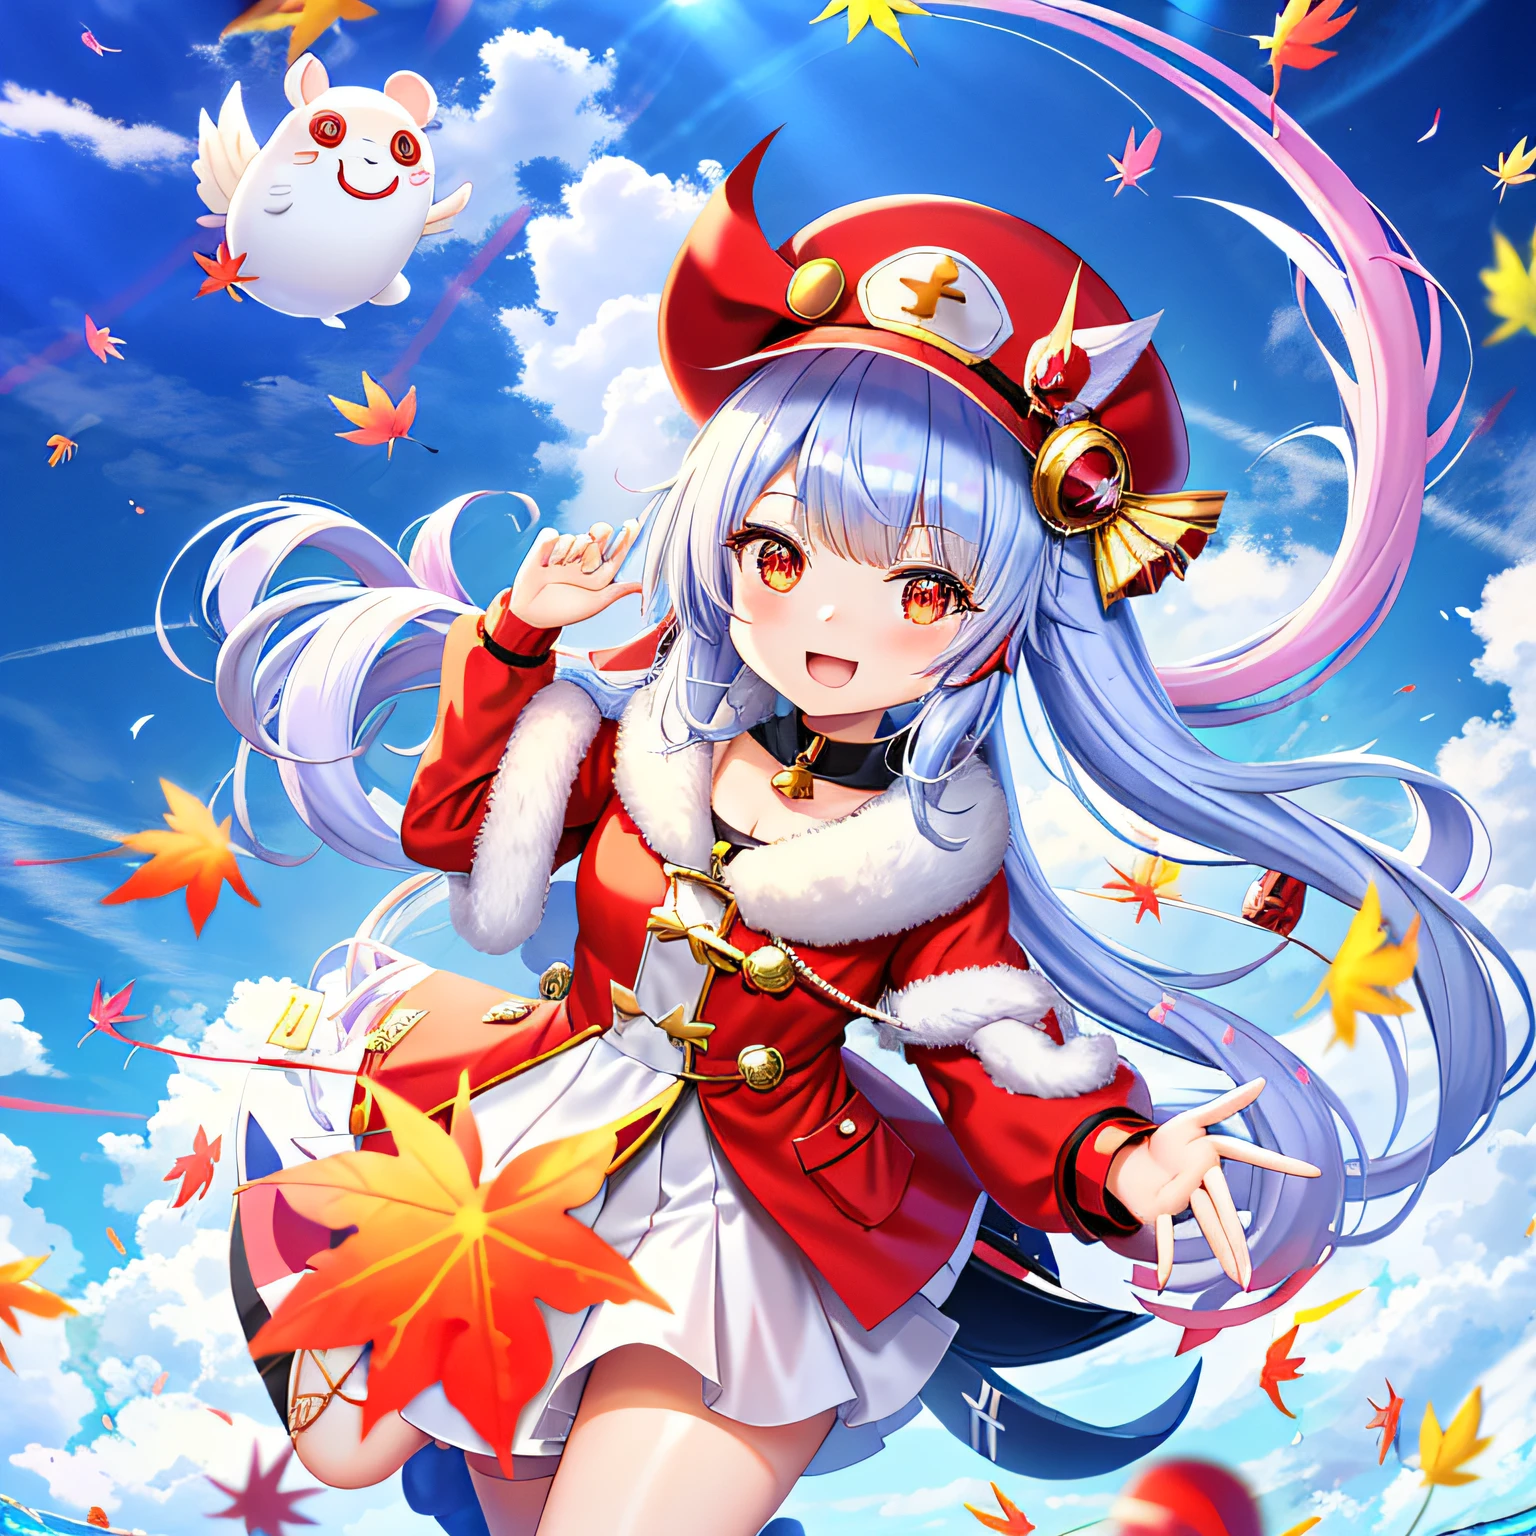 Anime girl au chapeau et manteau rouge volant dans le ciel, splash art anime loli, souris d&#39;érable, , oeuvre officielle, Une scène du《voie d&#39;azur》jeu vidéo, mana dans l&#39;air, voie d&#39;azur style, style artistique de l&#39;usine de runes 5, Impact d&#39;Ayaka Genshin, fille alchimiste, art des personnages de l&#39;histoire de l&#39;érable, fille d&#39;arme à feu d&#39;histoire d&#39;érable